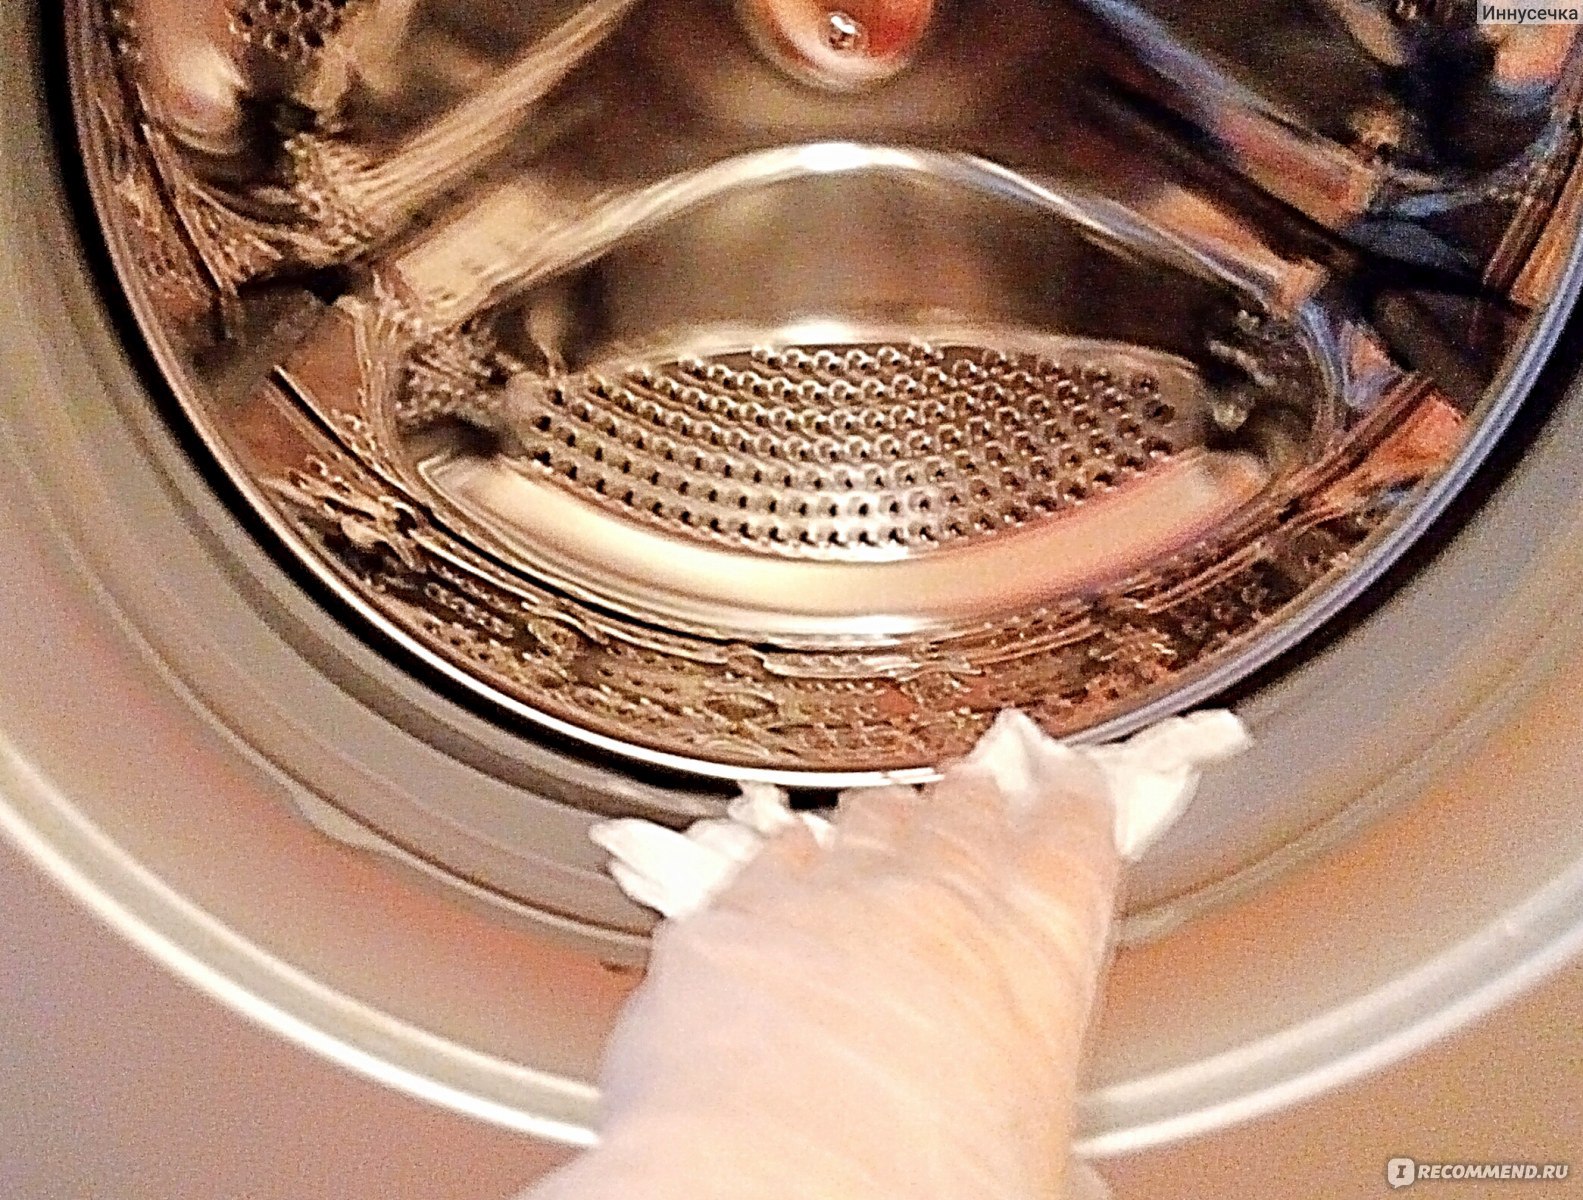 Очистка стиральной машины купить. Барабан машинки. Чистка стиральной машины. Запах из стиральной машины средства. Пахнет из барабана стиральной машины.